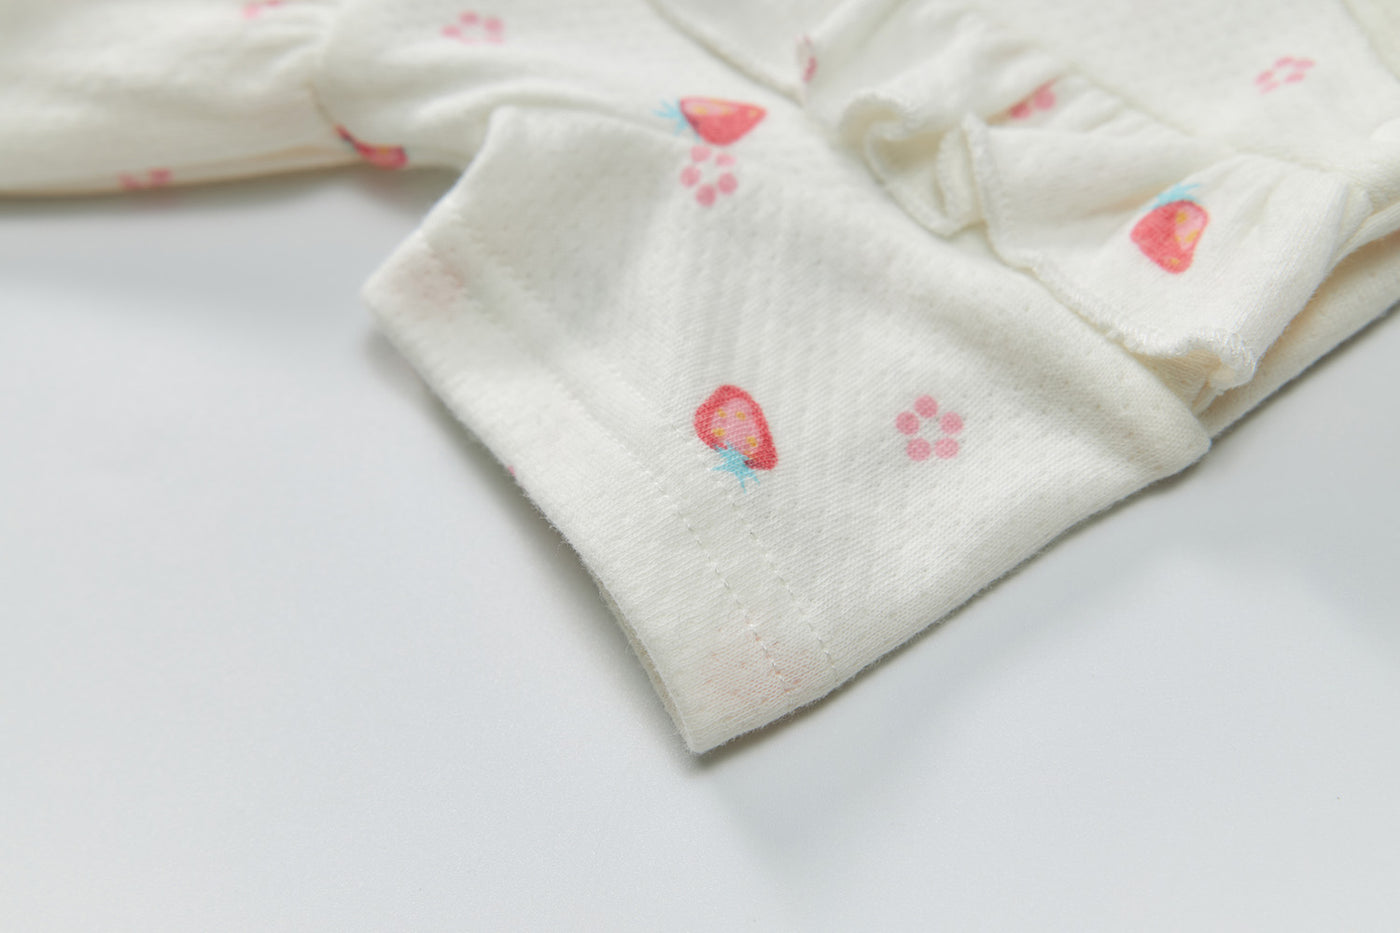 Baby Girl Short Sleeves Ruffled Bodysuit Dress White w Strawberries - Little Kooma